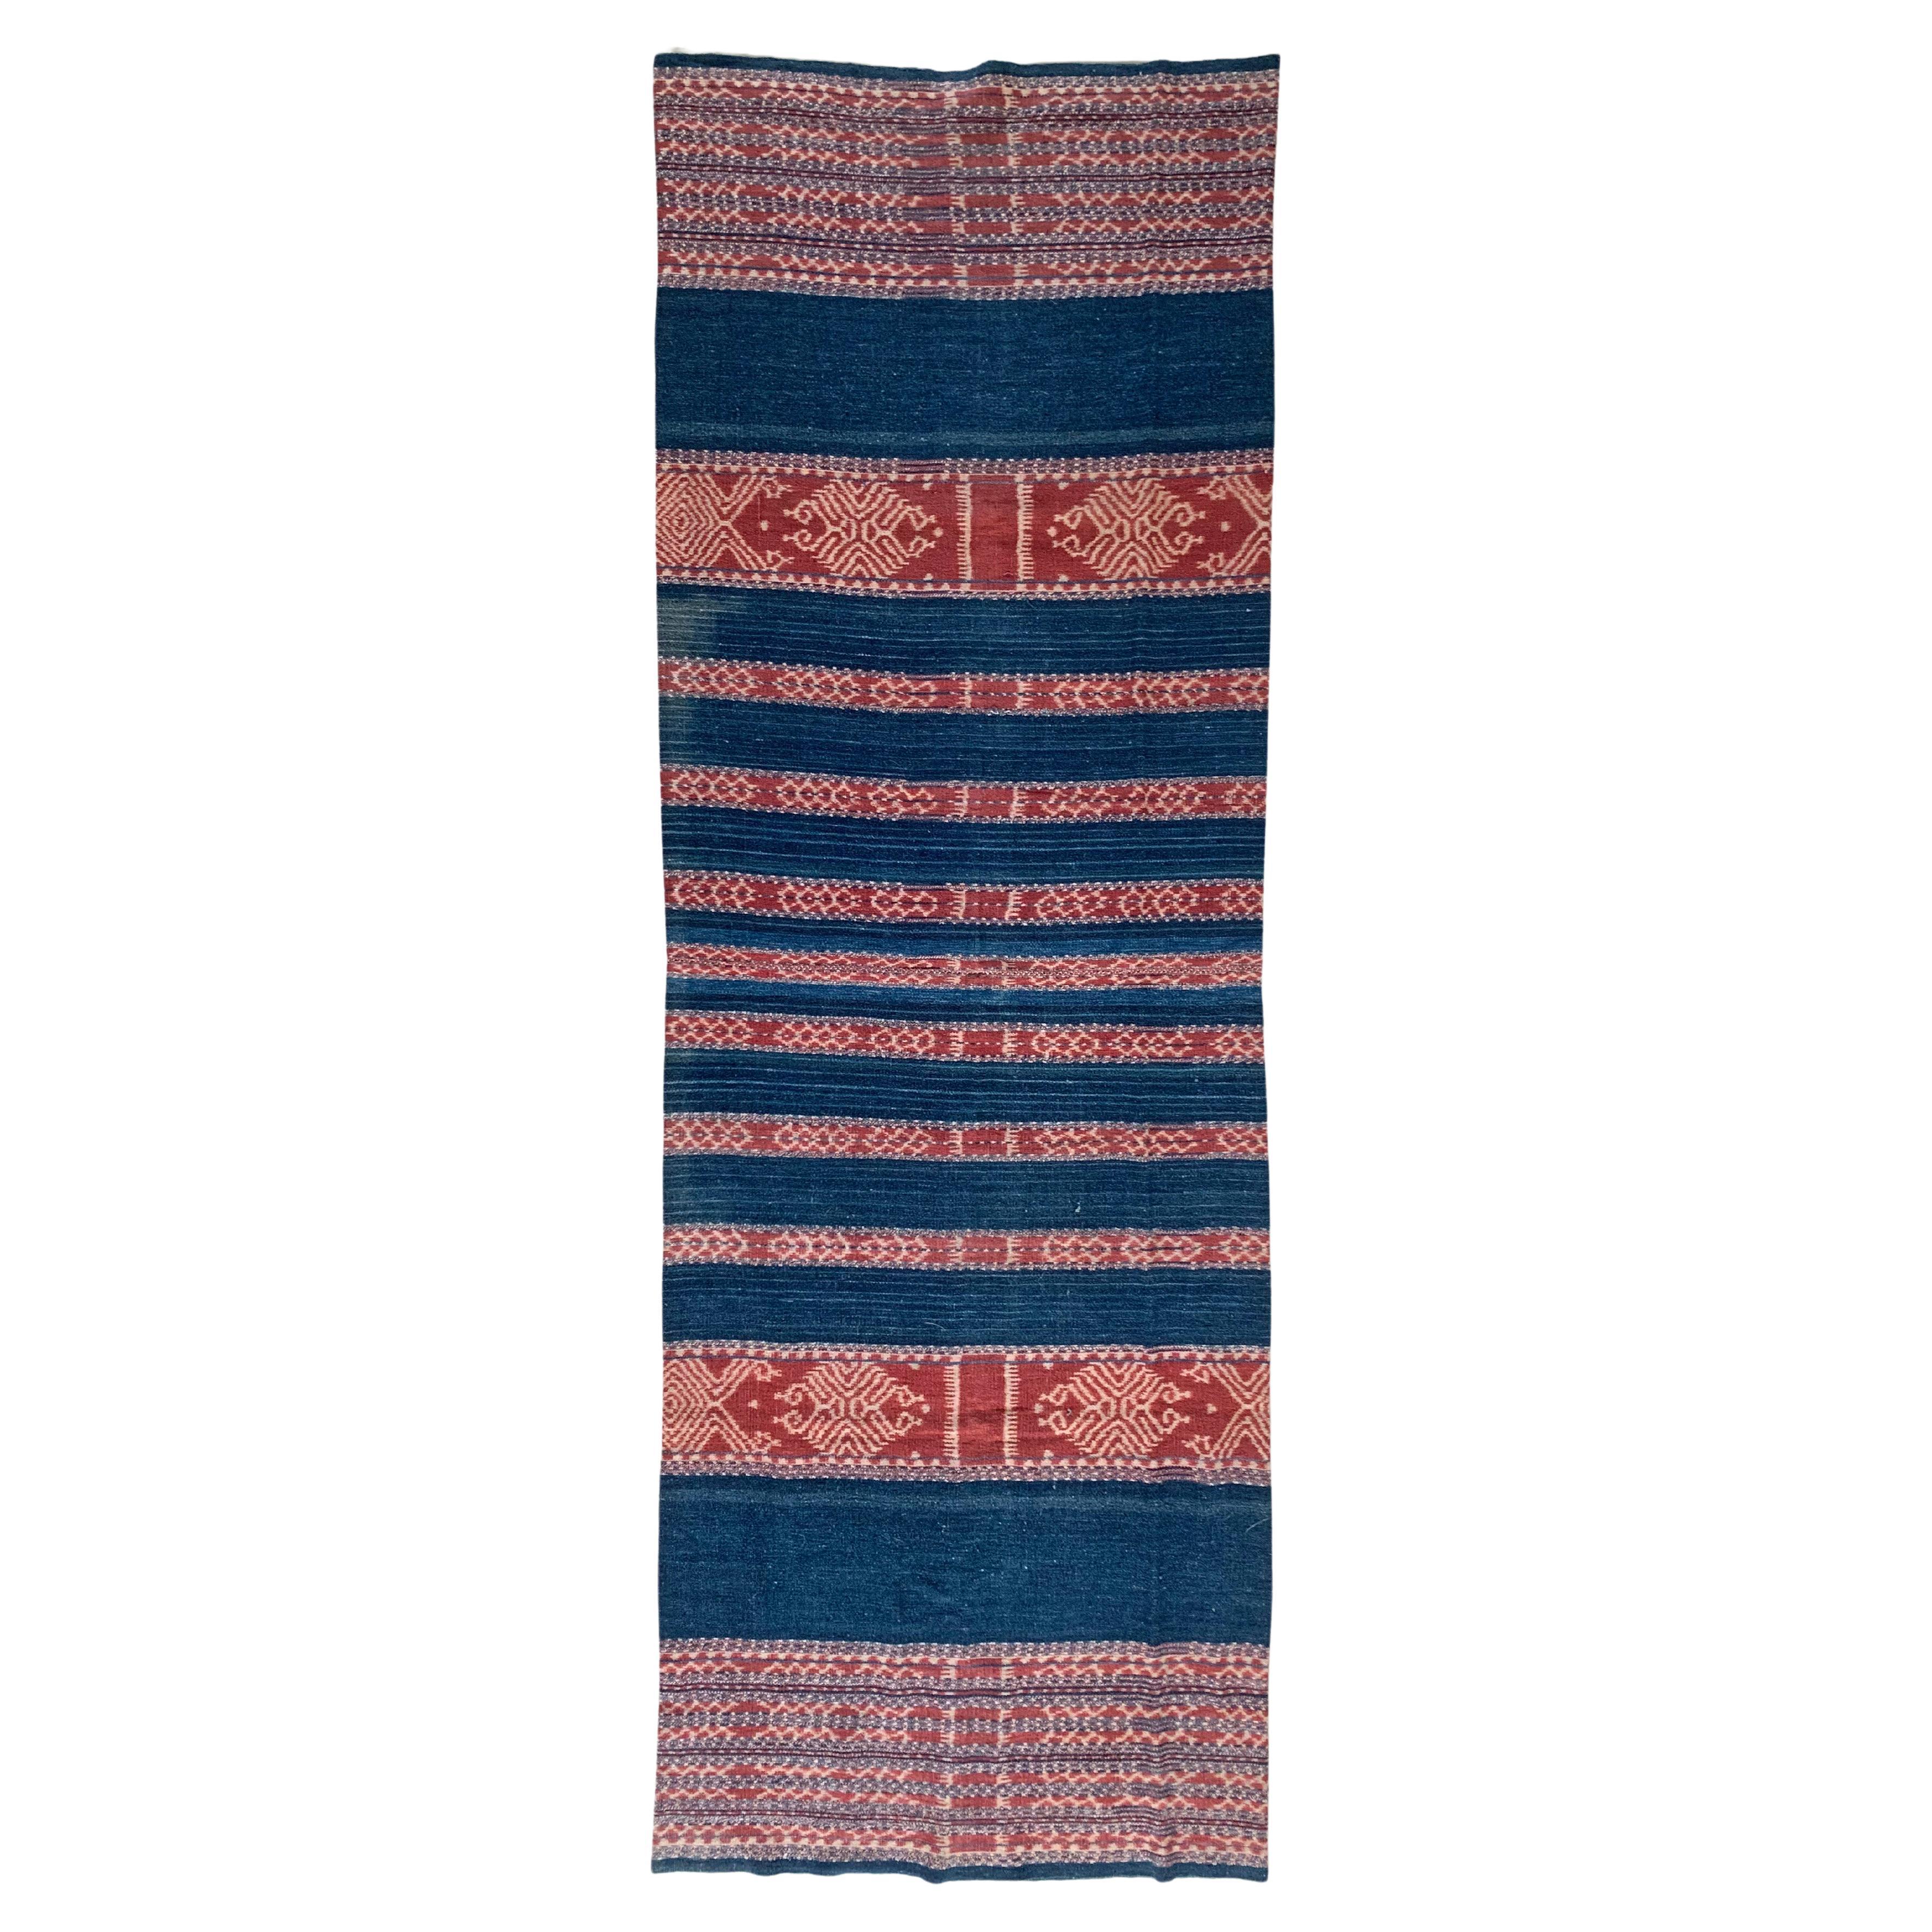 Ikat-Textilien aus Timor mit naturfarbenem Farbton und Stammesmotiven, Indonesien